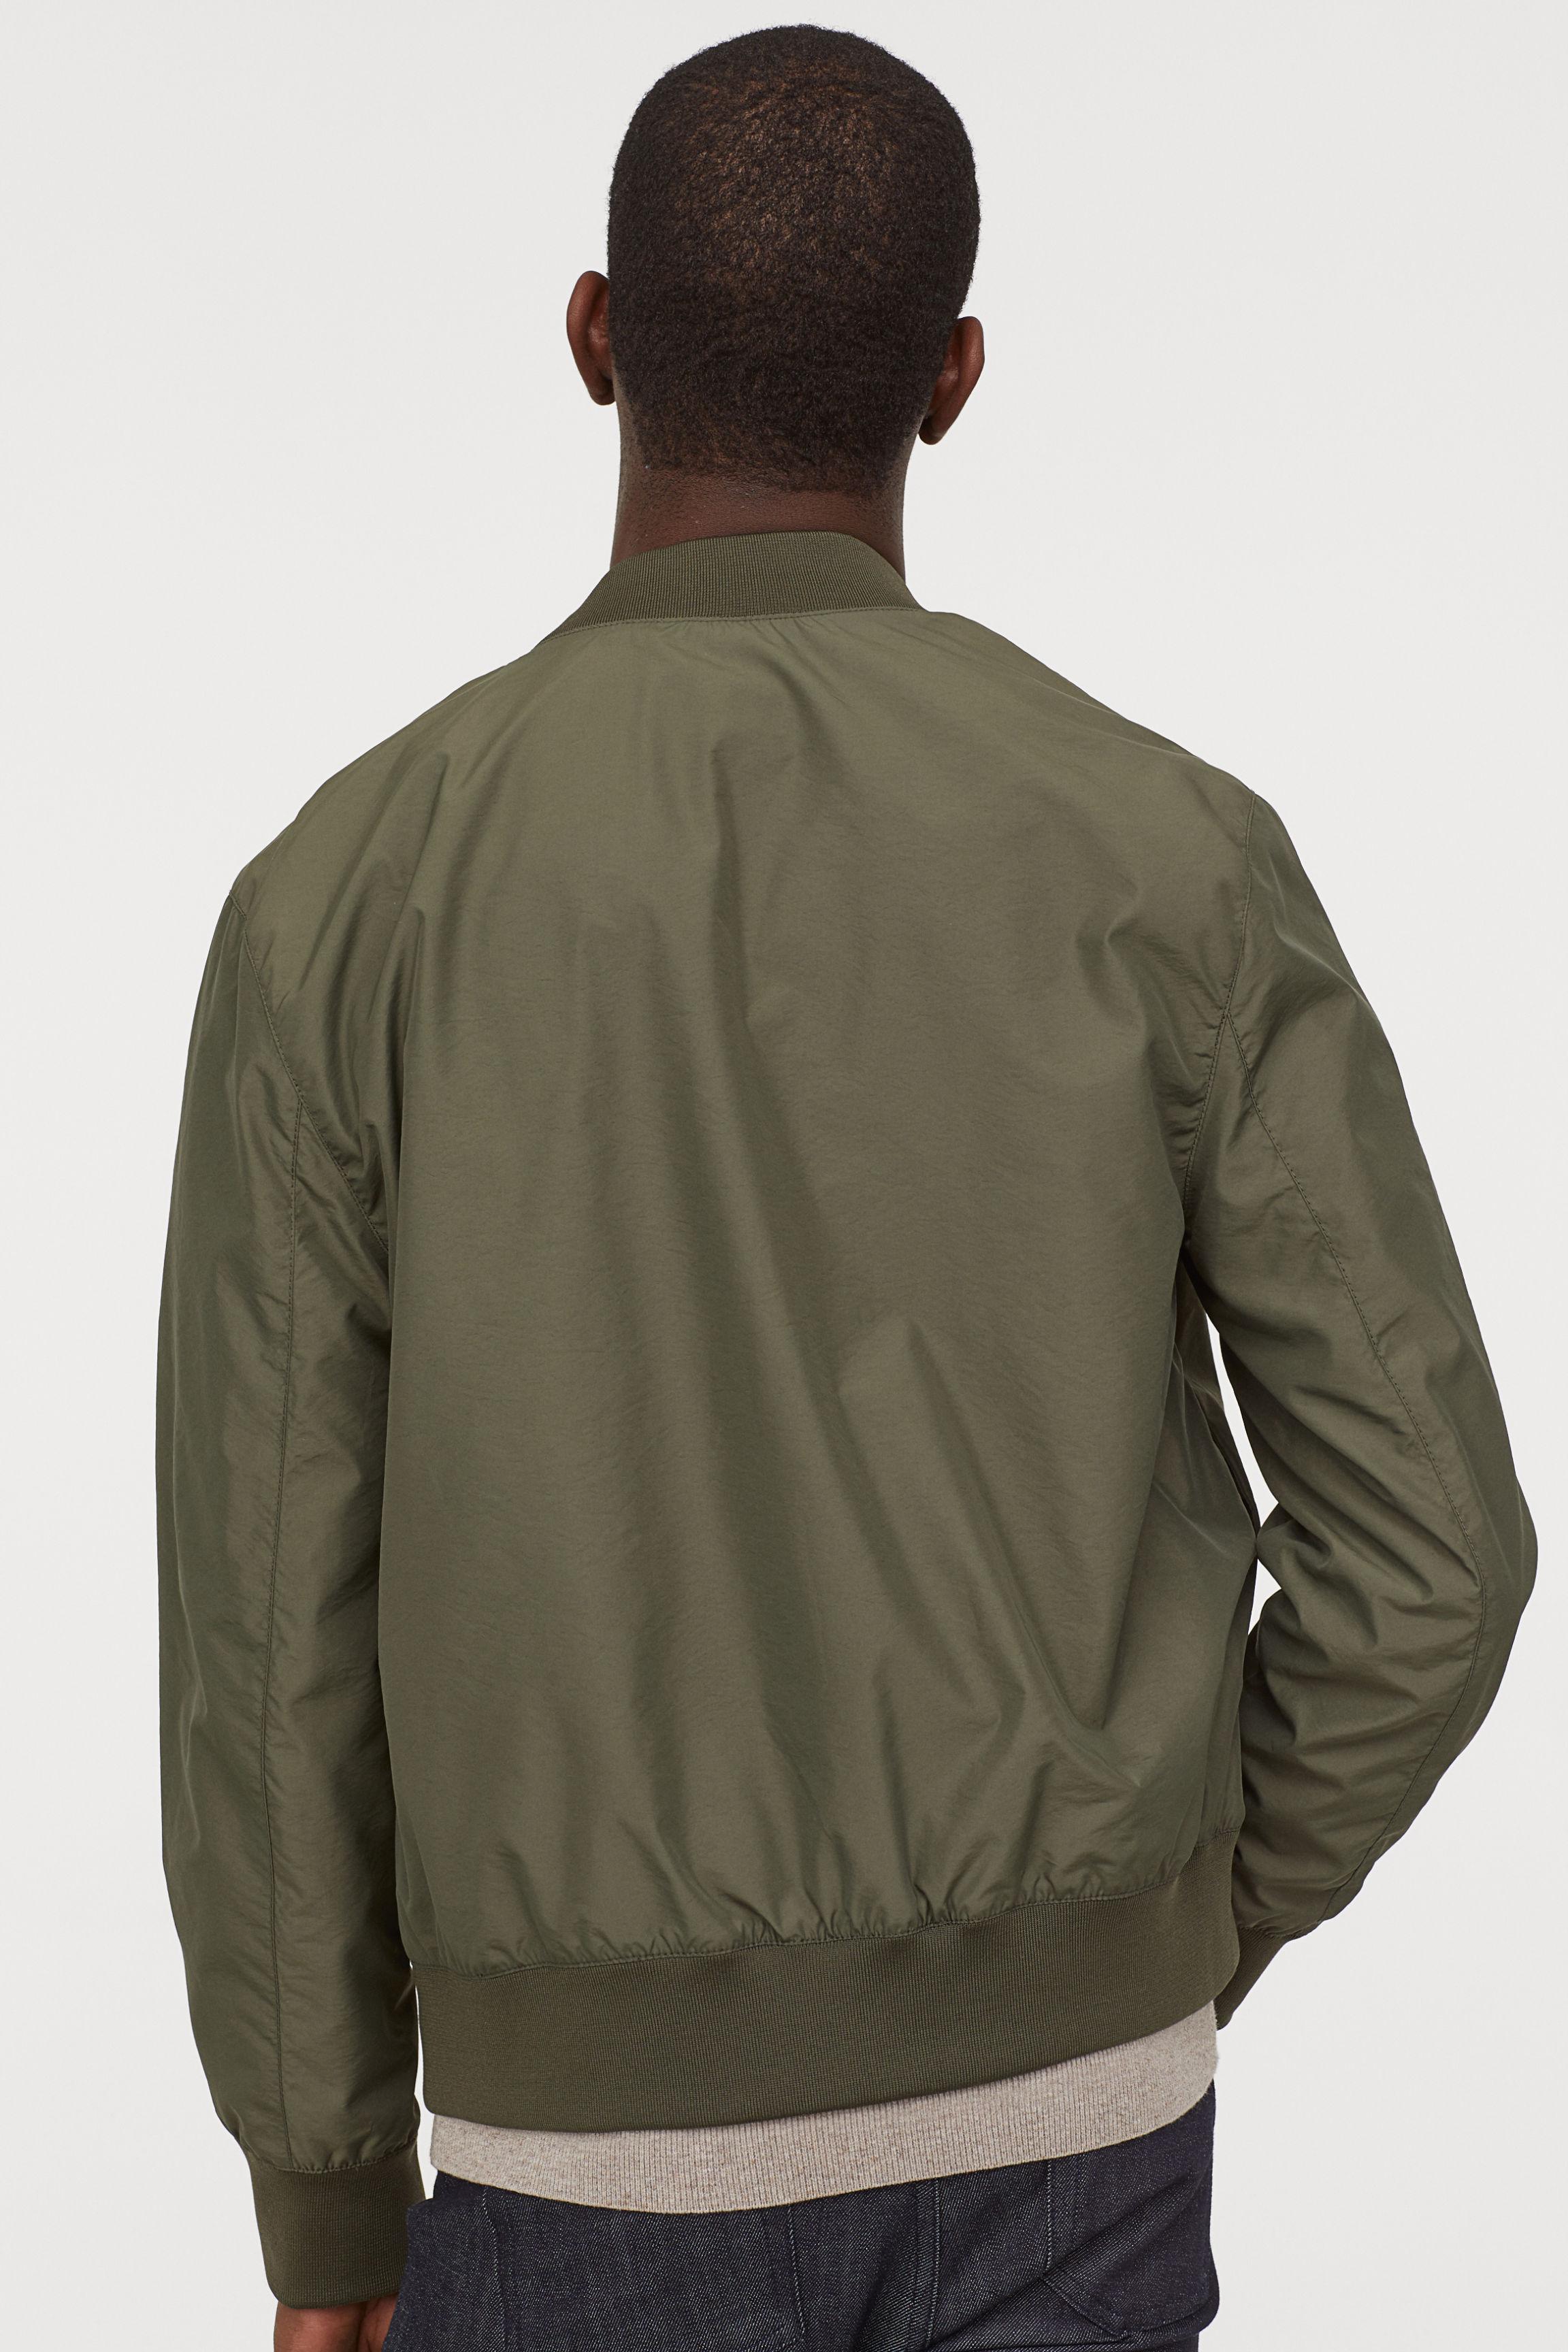 H&M Nylon-blend Bomber Jacket in Green for Men - Lyst